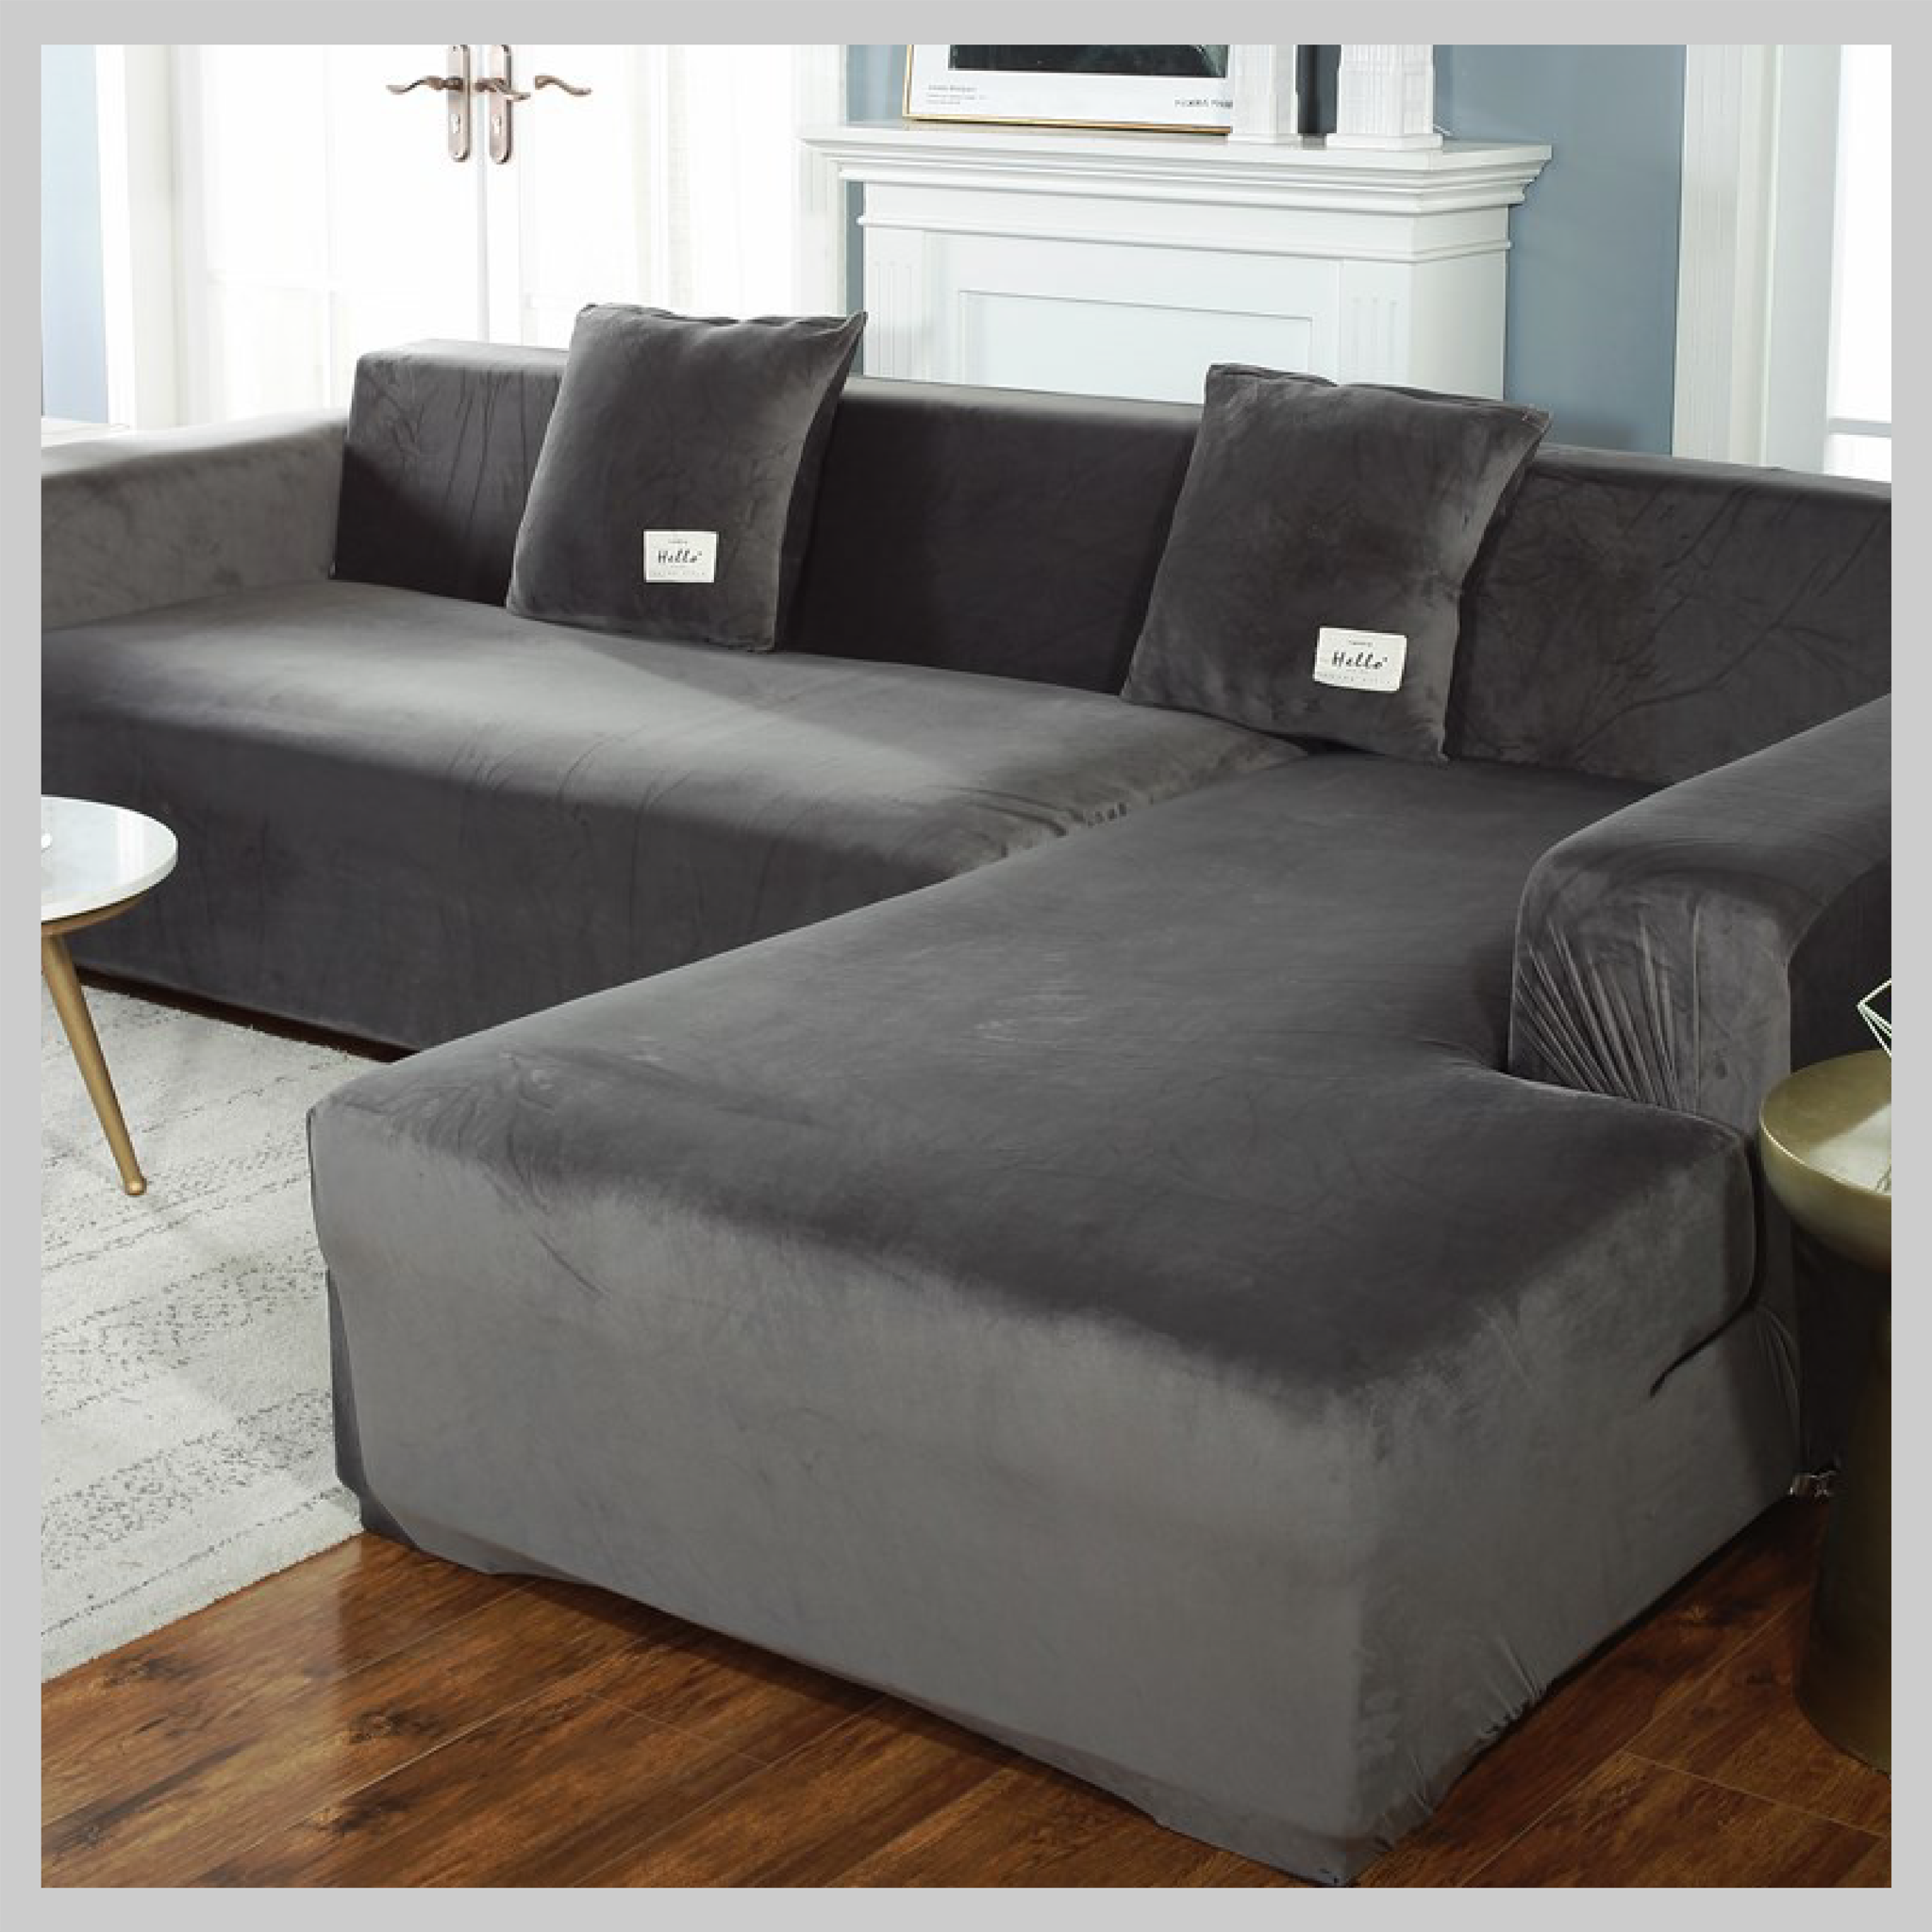 Silver Fox Velvet Living Room Elastic Furniture Sofa Cover